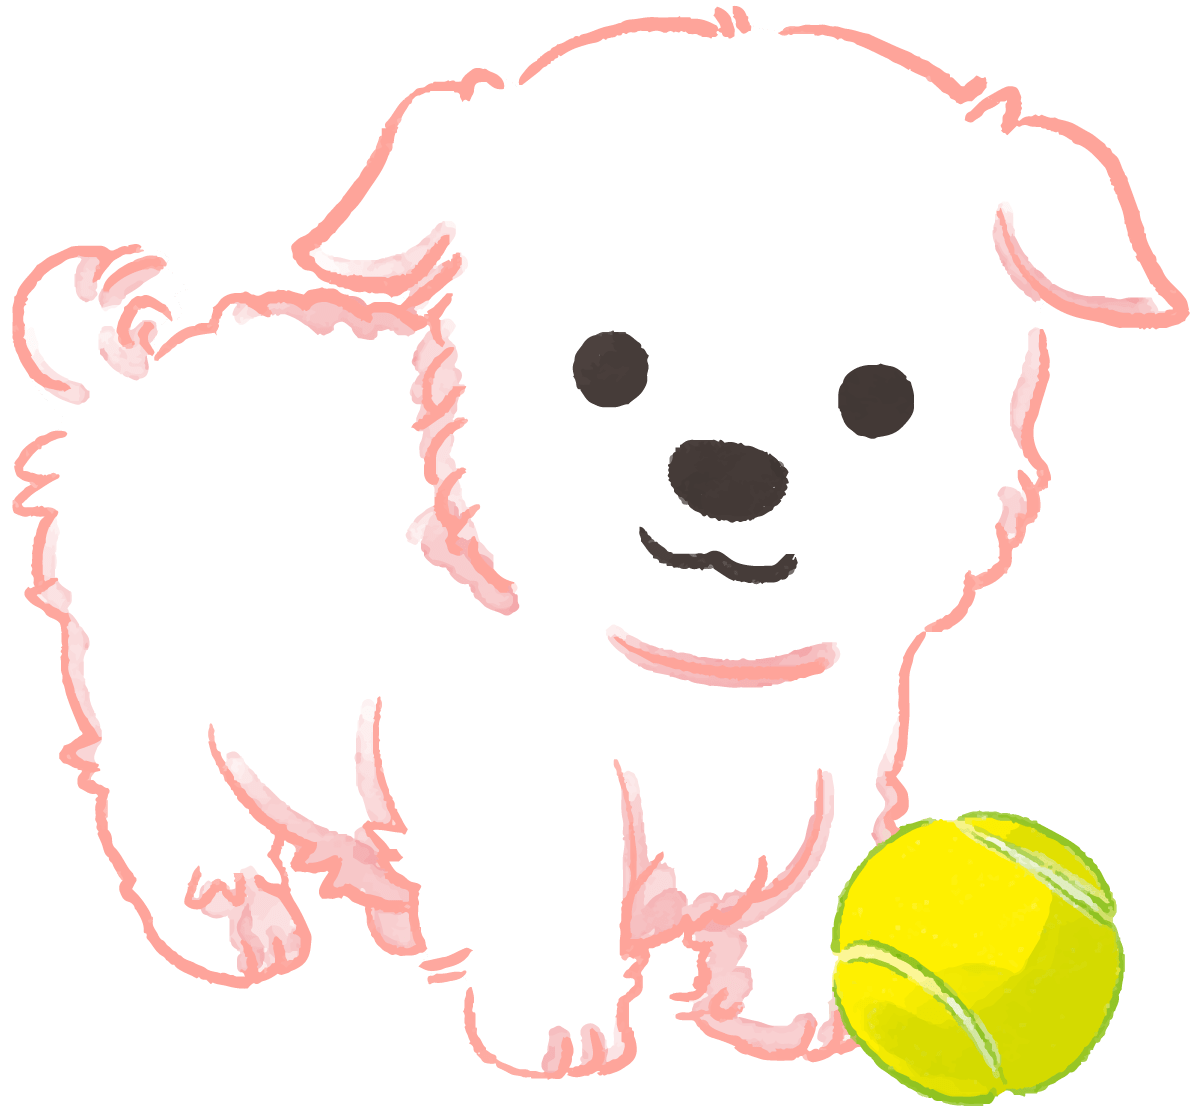 マルチーズ子犬(ボールで遊ぶ)かわいい犬